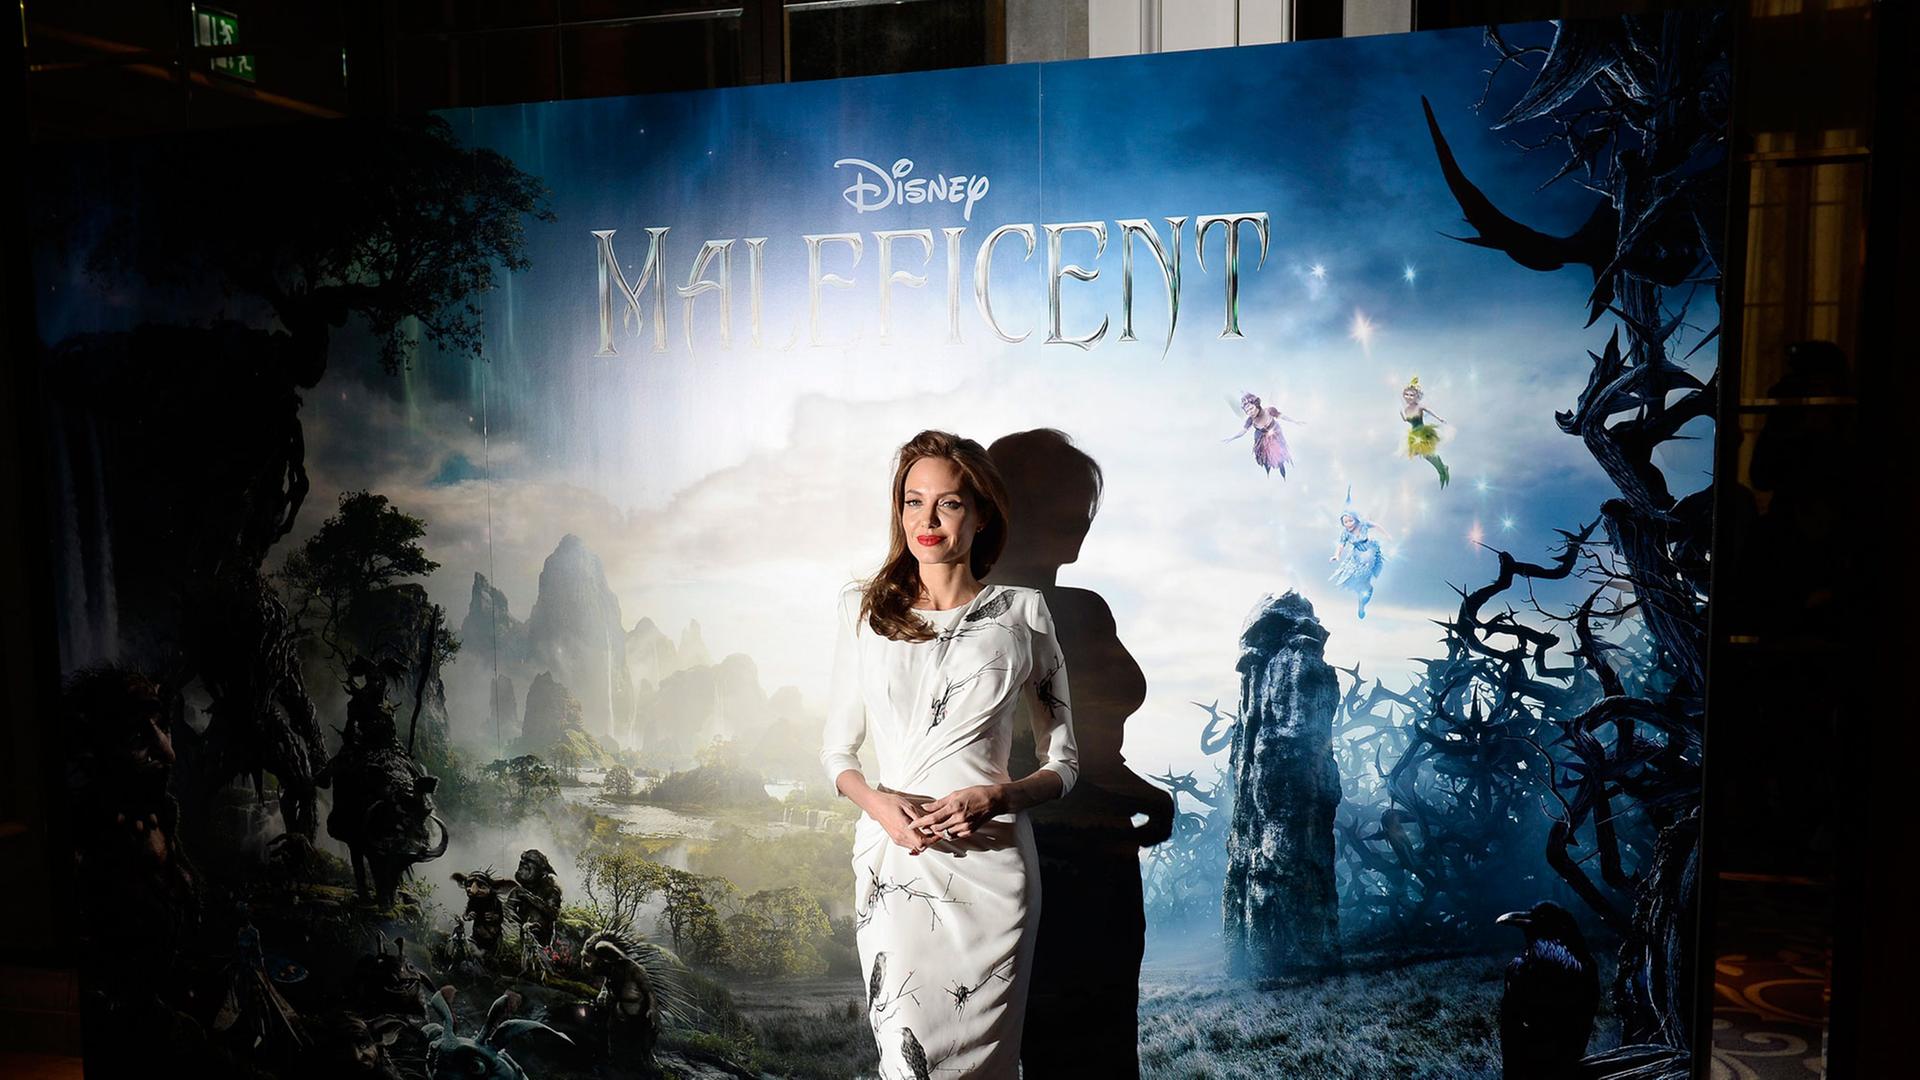 Angelina Jolie spielt die böse Fee in "Maleficent".